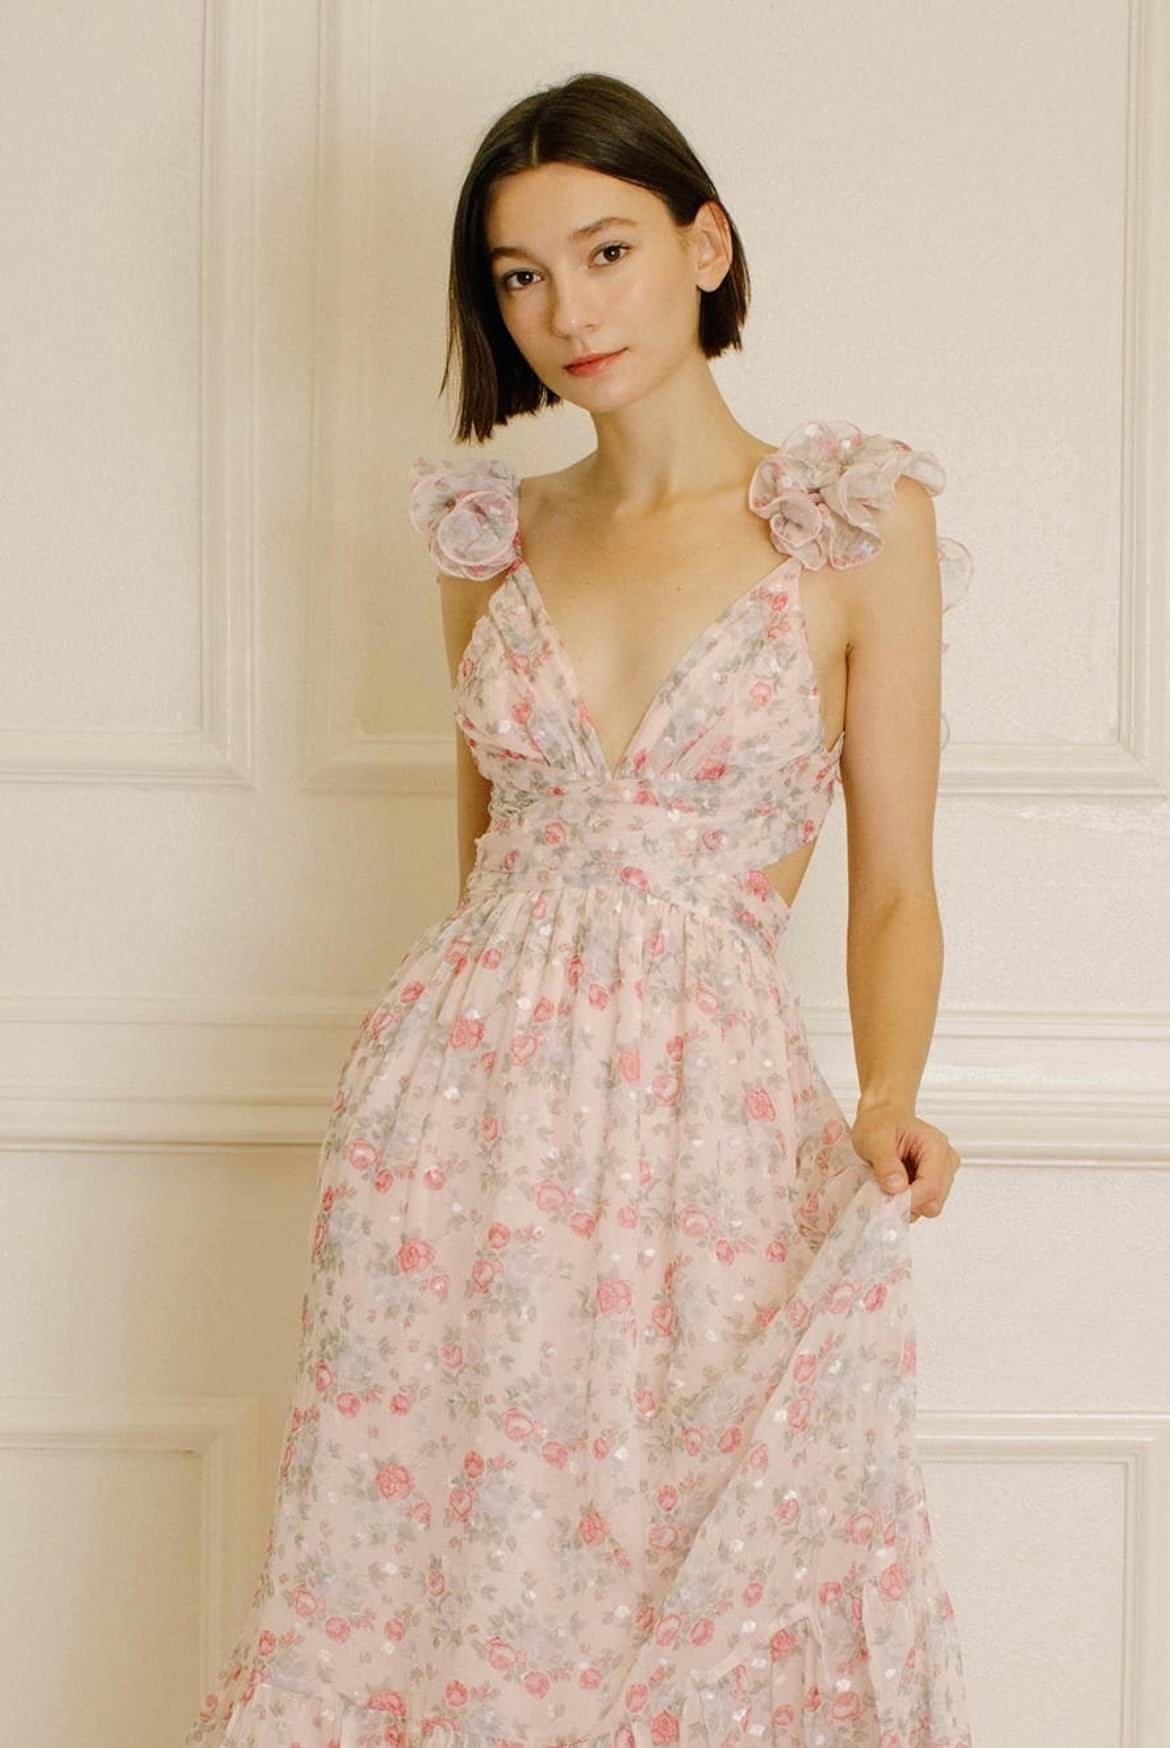 Veronica Floral Maxi Dress